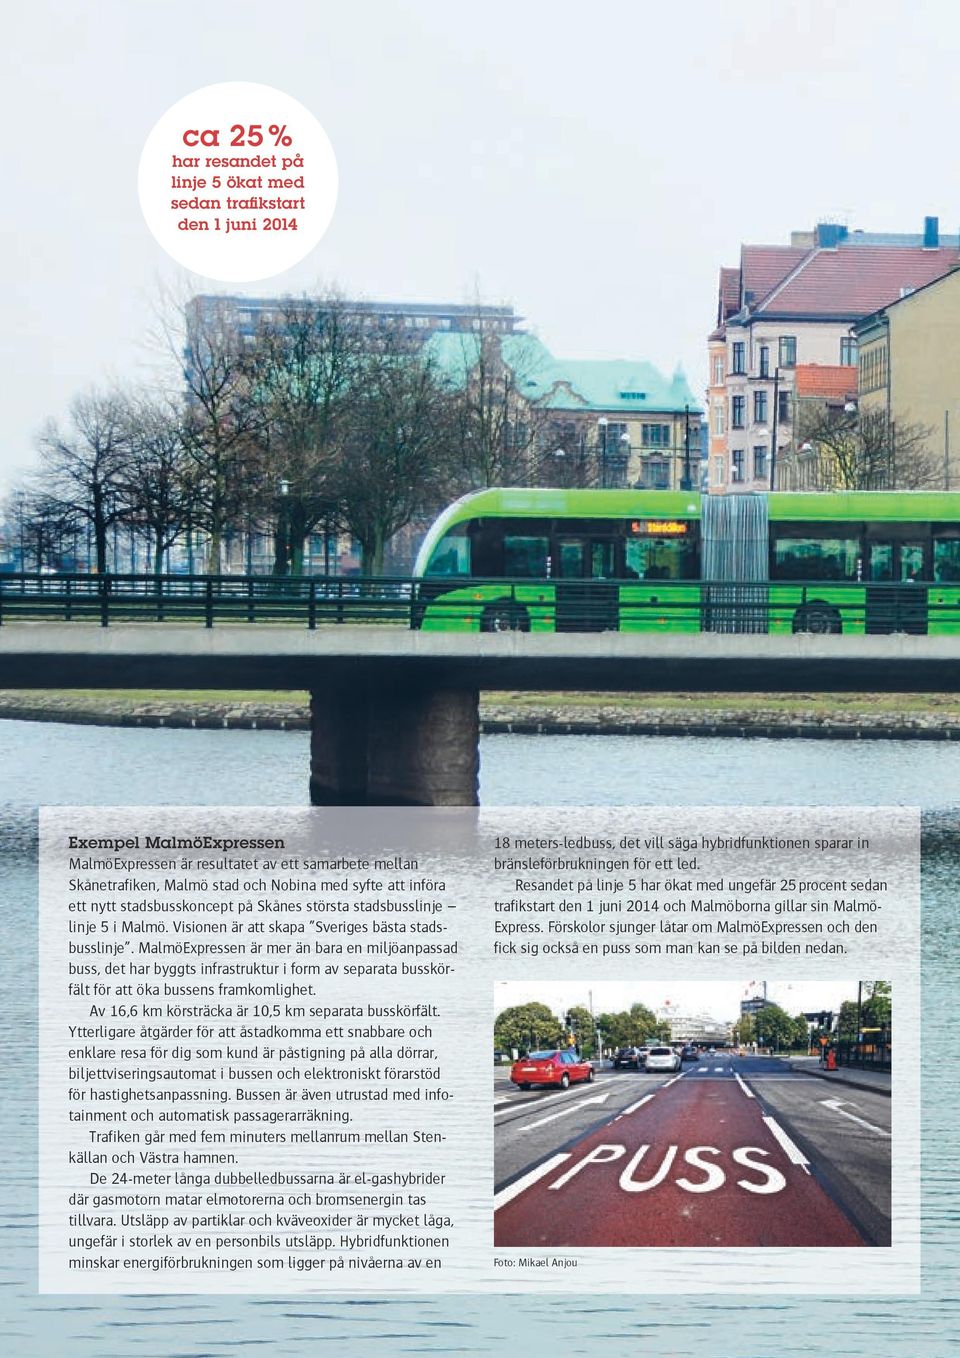 MalmöExpressen är mer än bara en miljöanpassad buss, det har byggts infrastruktur i form av separata busskörfält för att öka bussens framkomlighet.